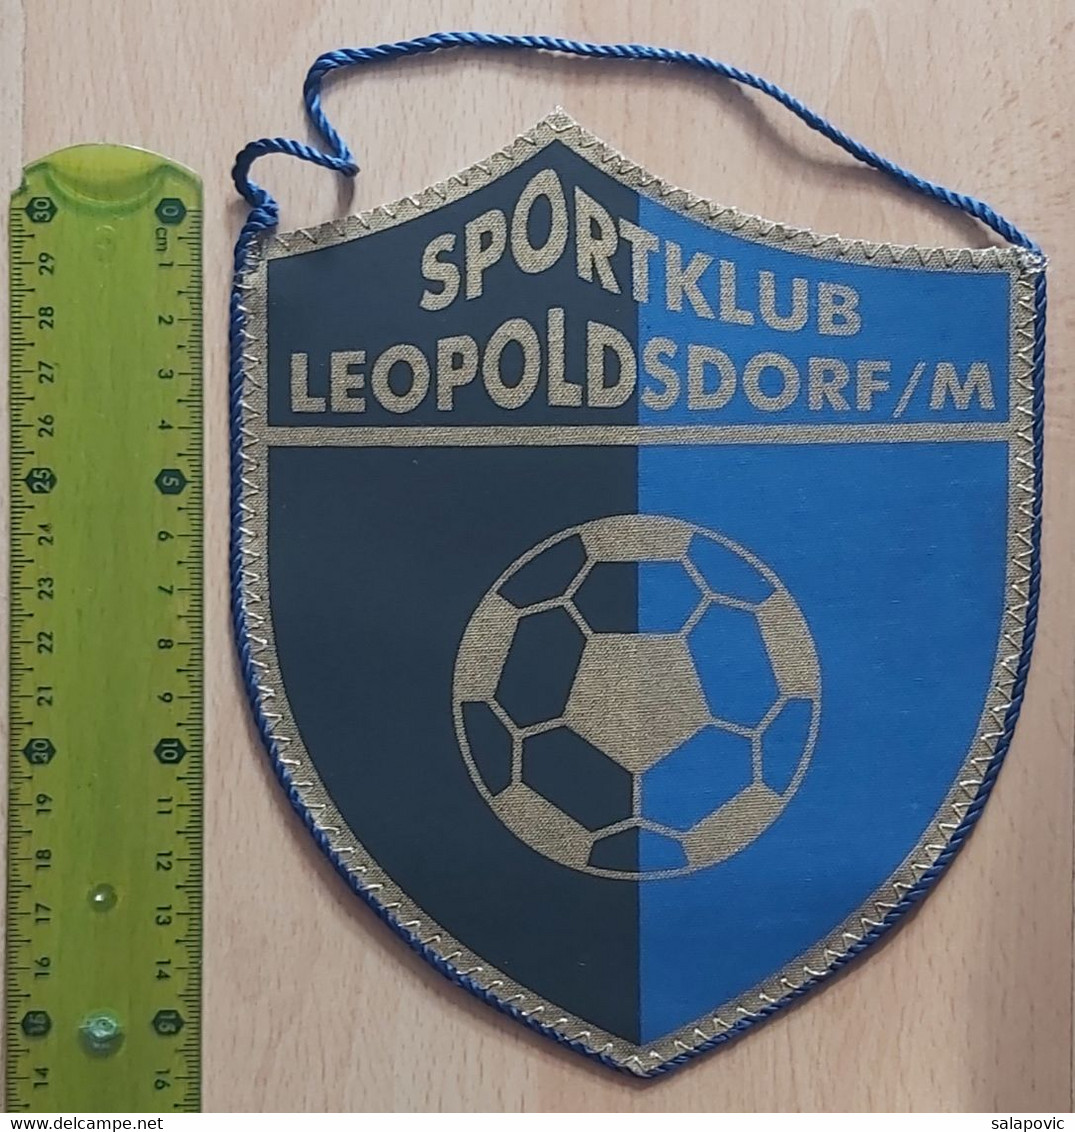 Sportklub Leopoldsdorf Im Mar Austria  Football Club Soccer Fussball Calcio Futbol Futebol  PENNANT, SPORTS FLAG ZS 5/18 - Bekleidung, Souvenirs Und Sonstige